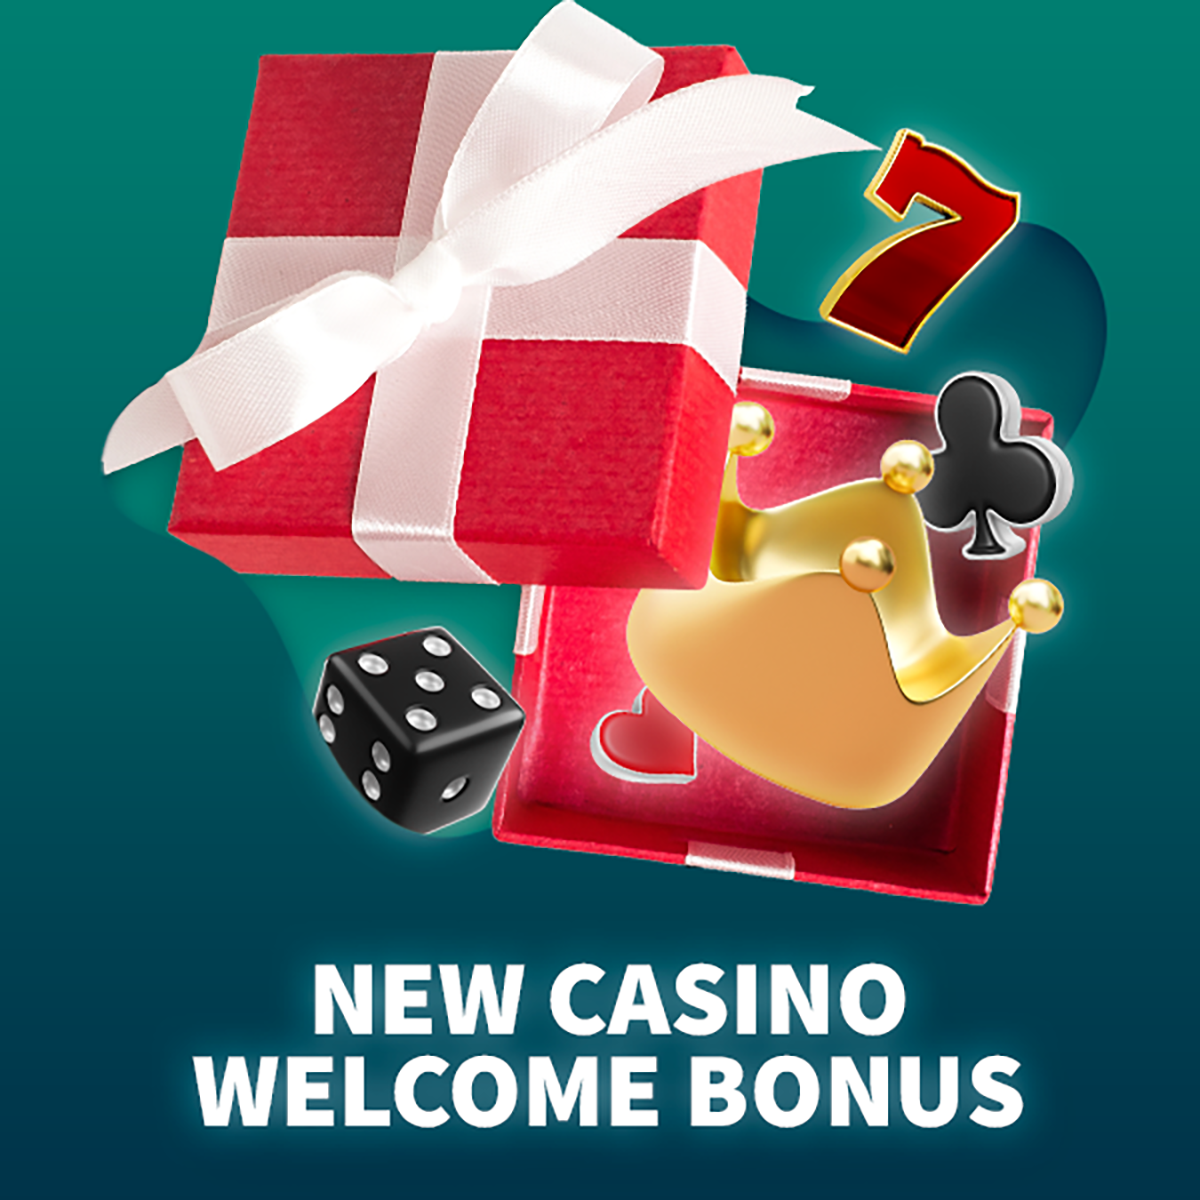 New casino welcome bonus